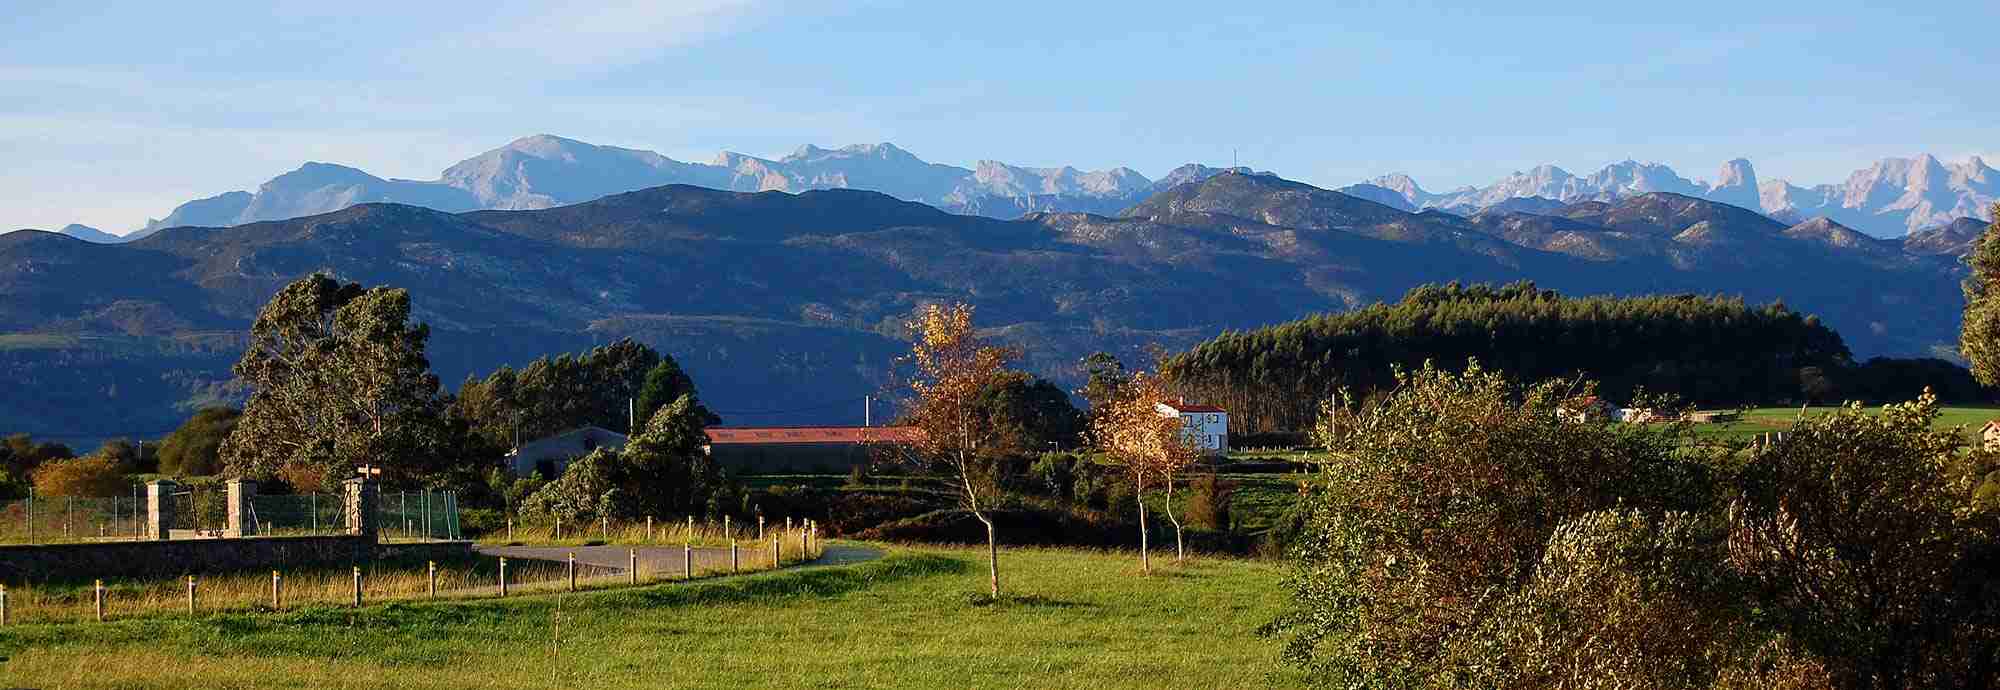 Holidays in Asturias